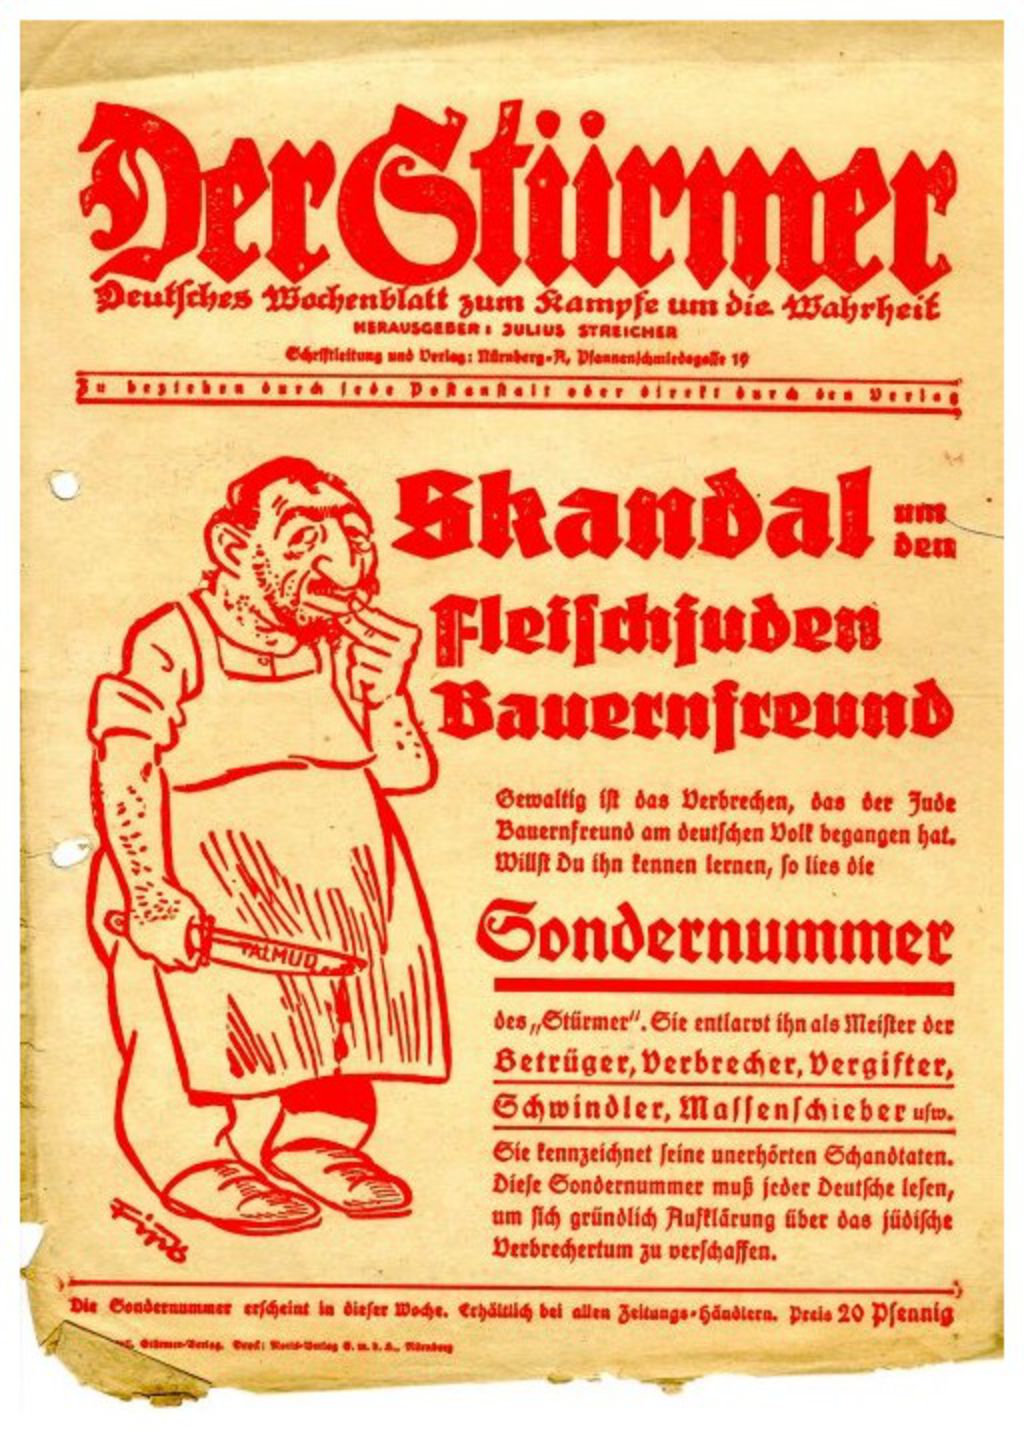 Exponat: Zeitung: Werbeblatt für eine Sondernummer der antisemitischen Zeitung "Der Stürmer", 1936